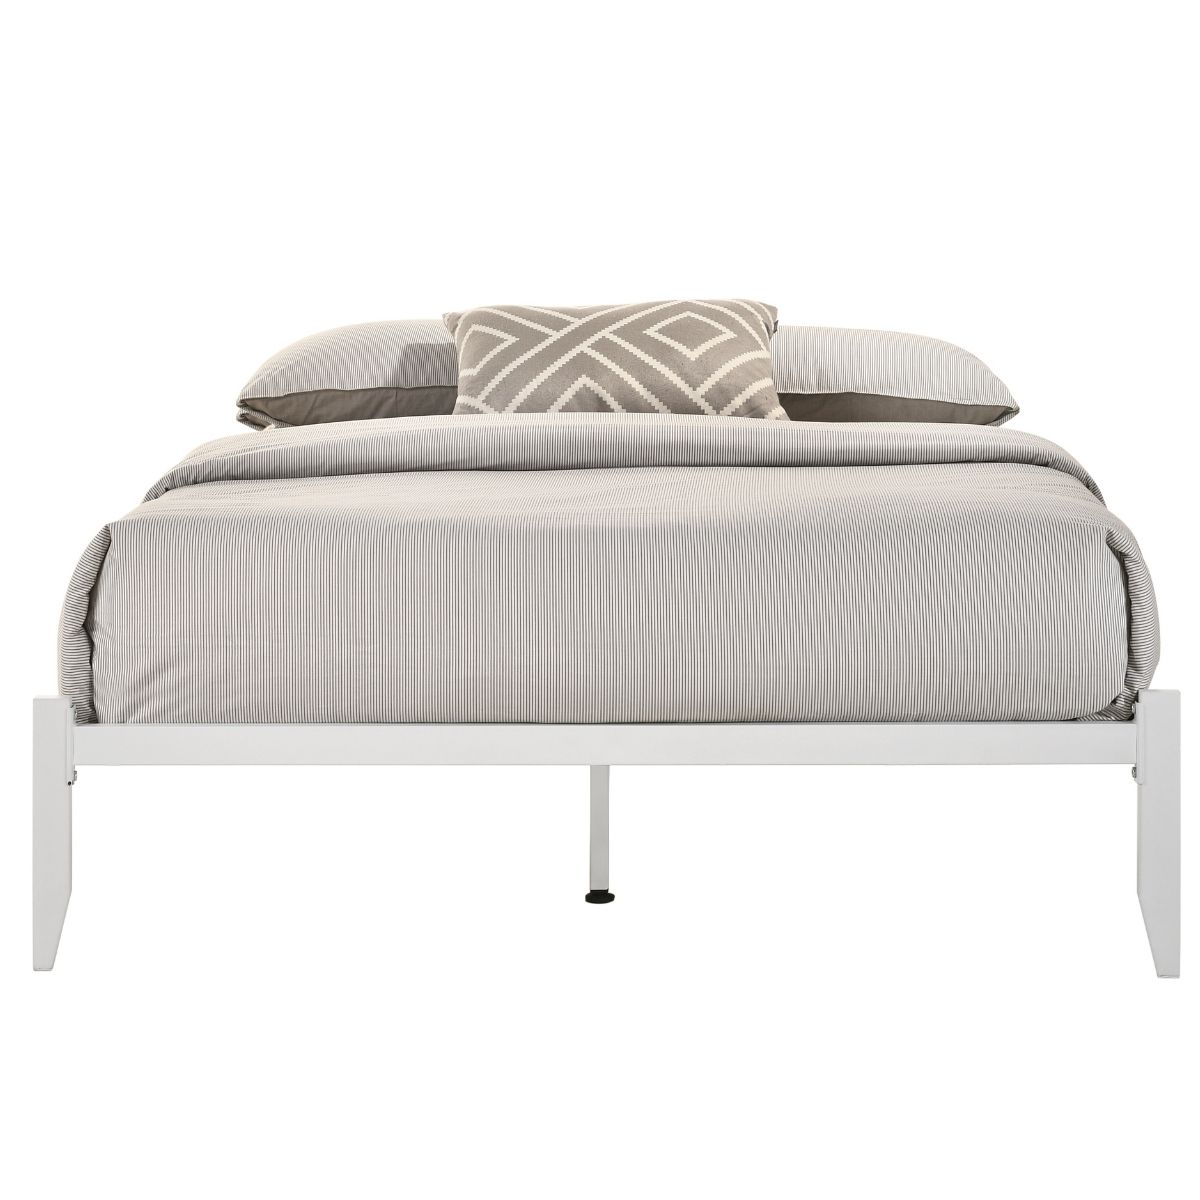 Furniture > Bedroom Metal Bed Base Frame Platform Foundation White - Queen